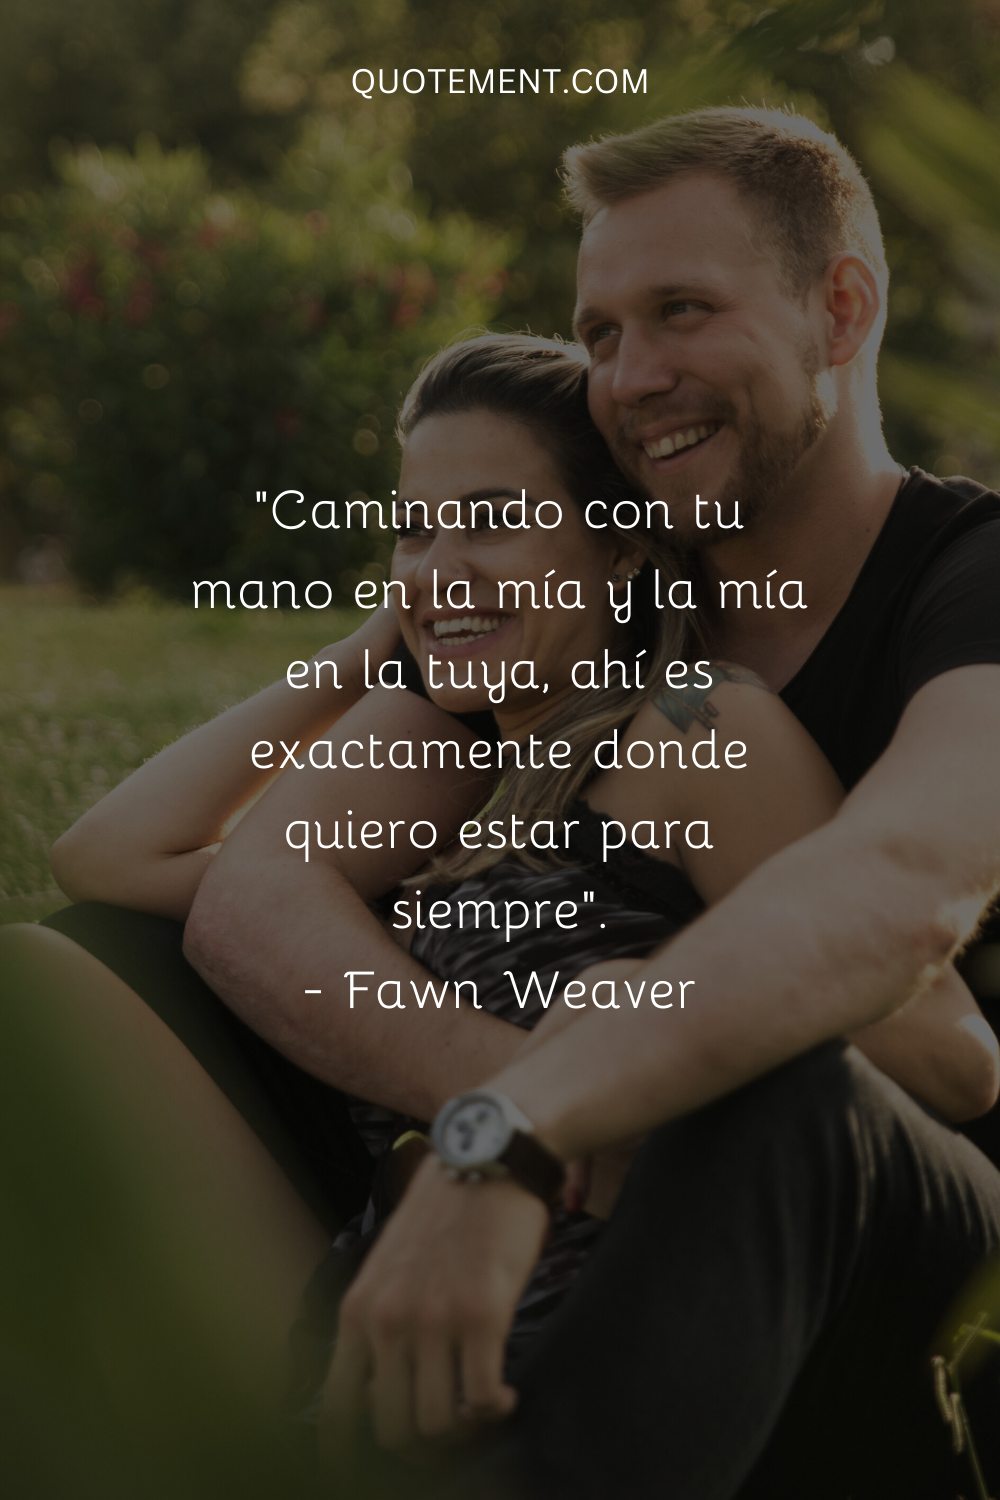 "Caminando con tu mano en la mía y la mía en la tuya, ahí es exactamente donde quiero estar para siempre". - Fawn Weaver